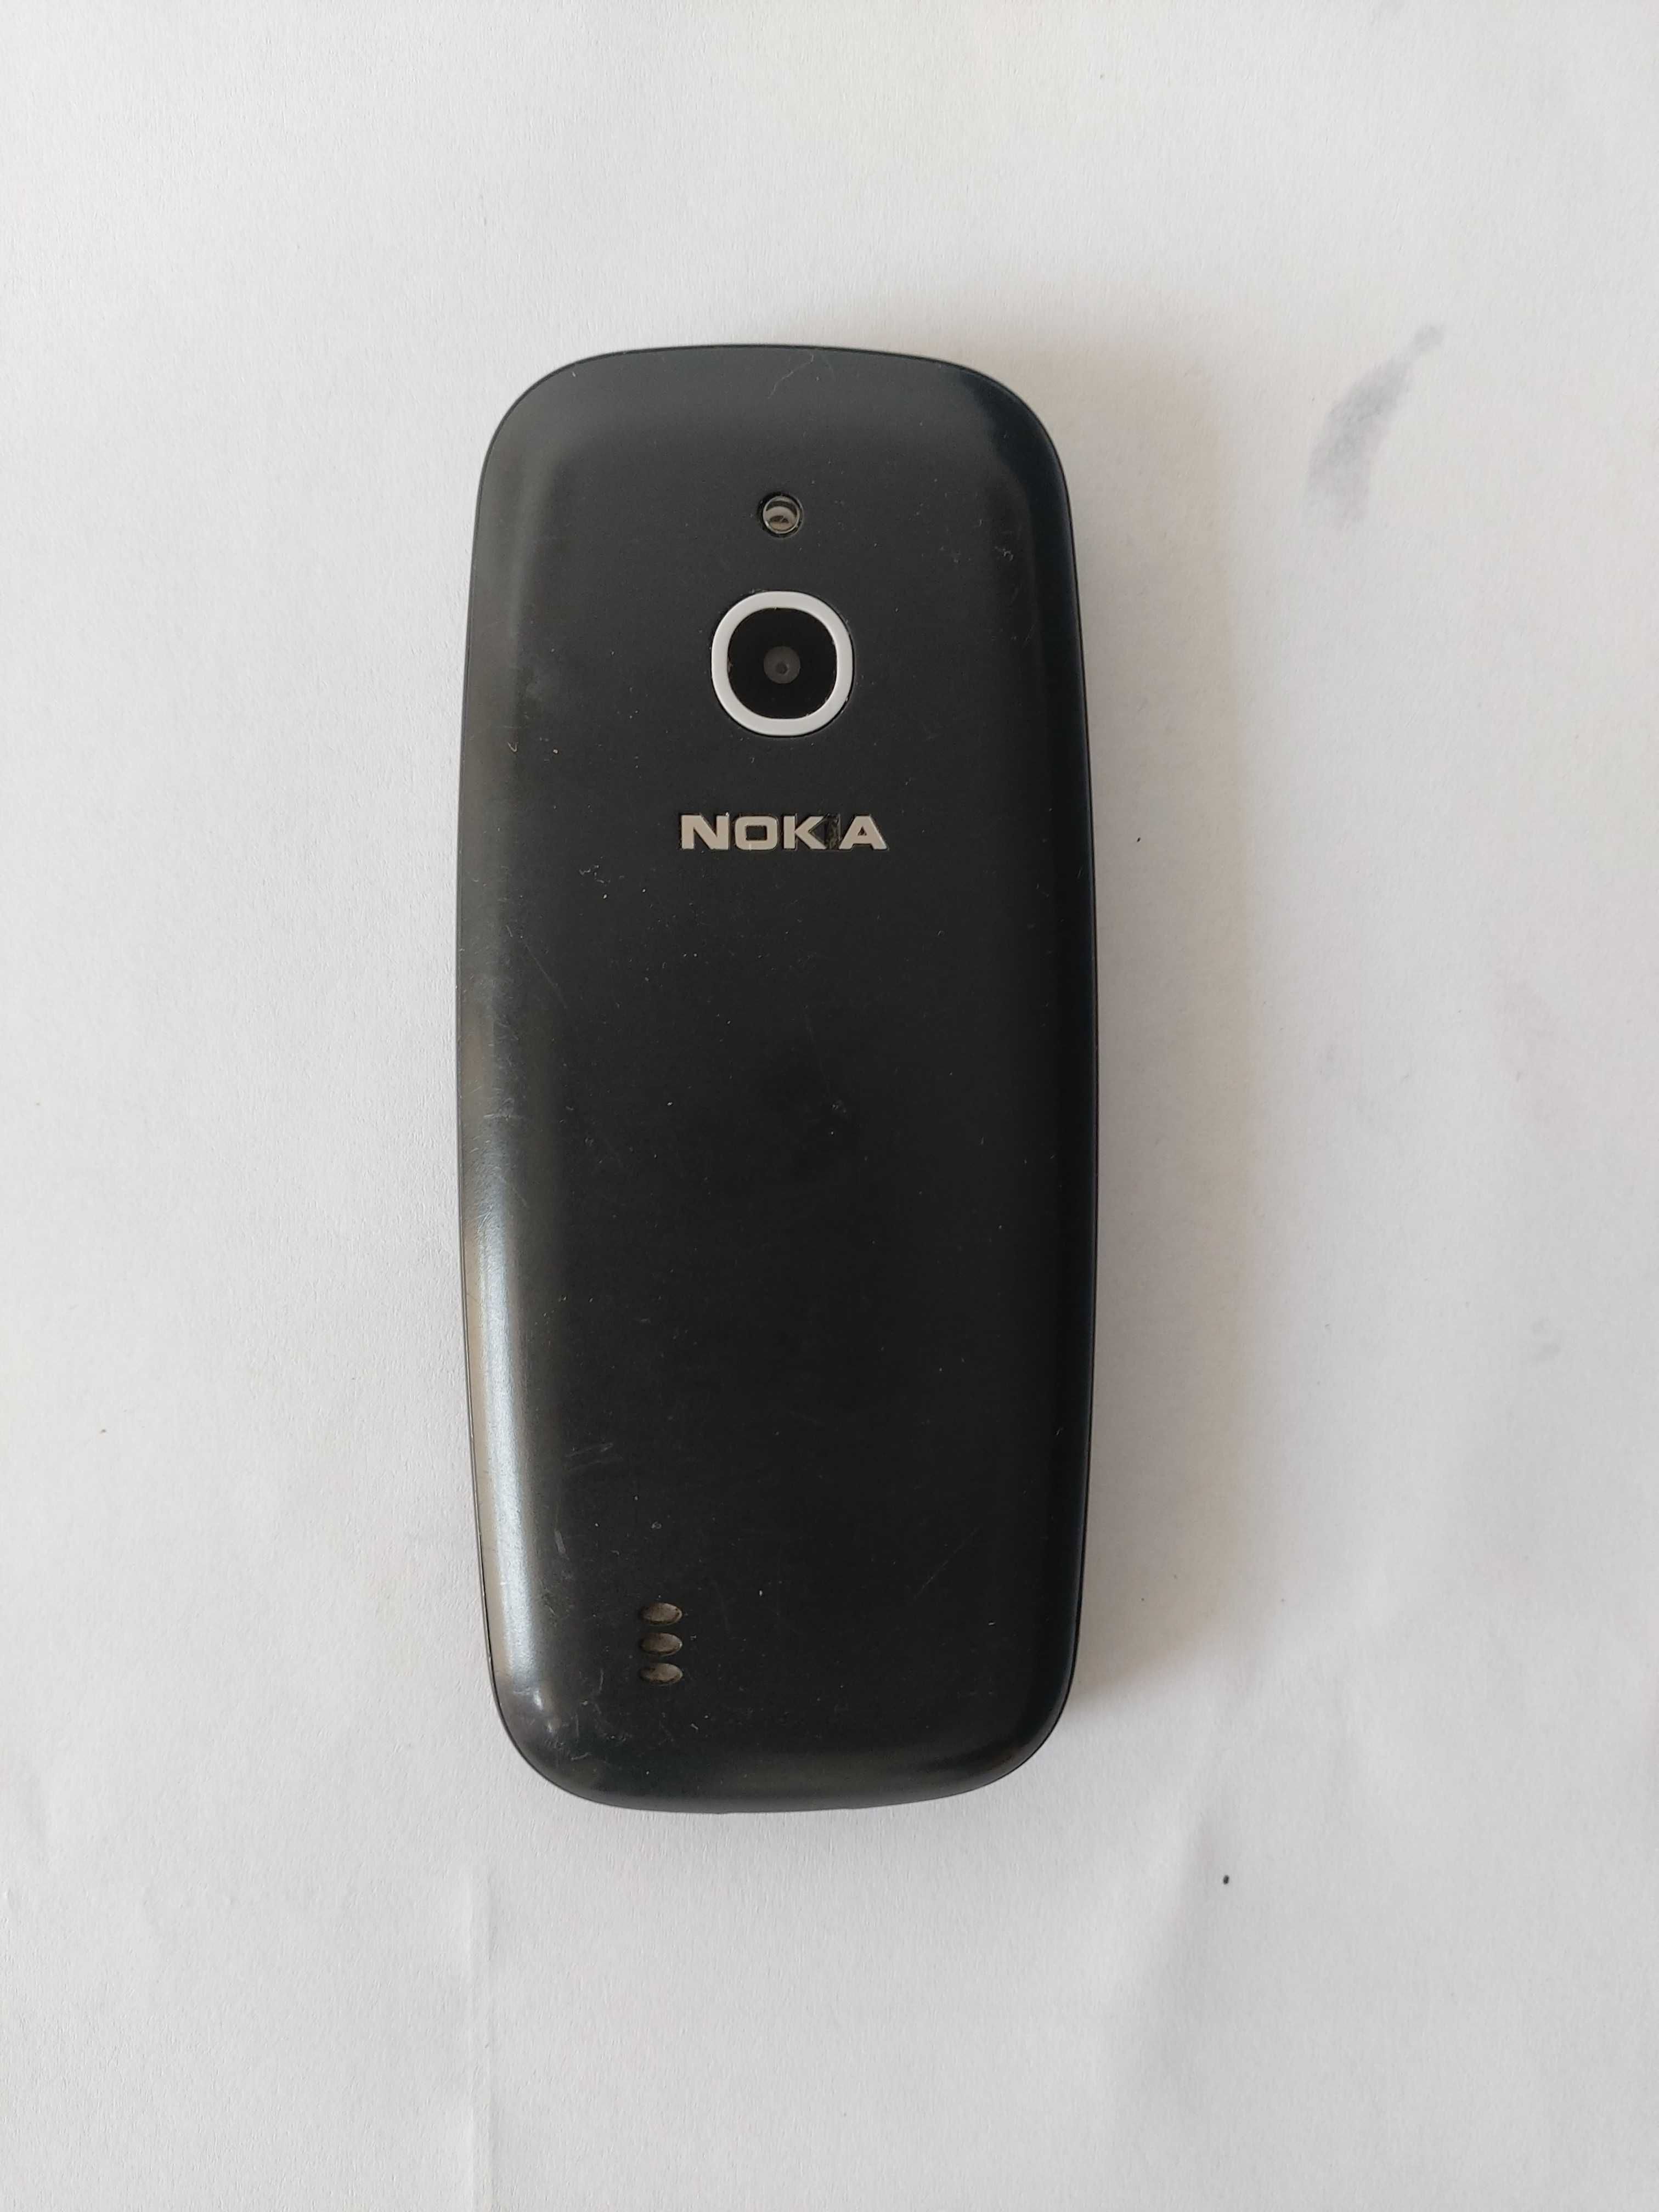 Nokia model ta-1022